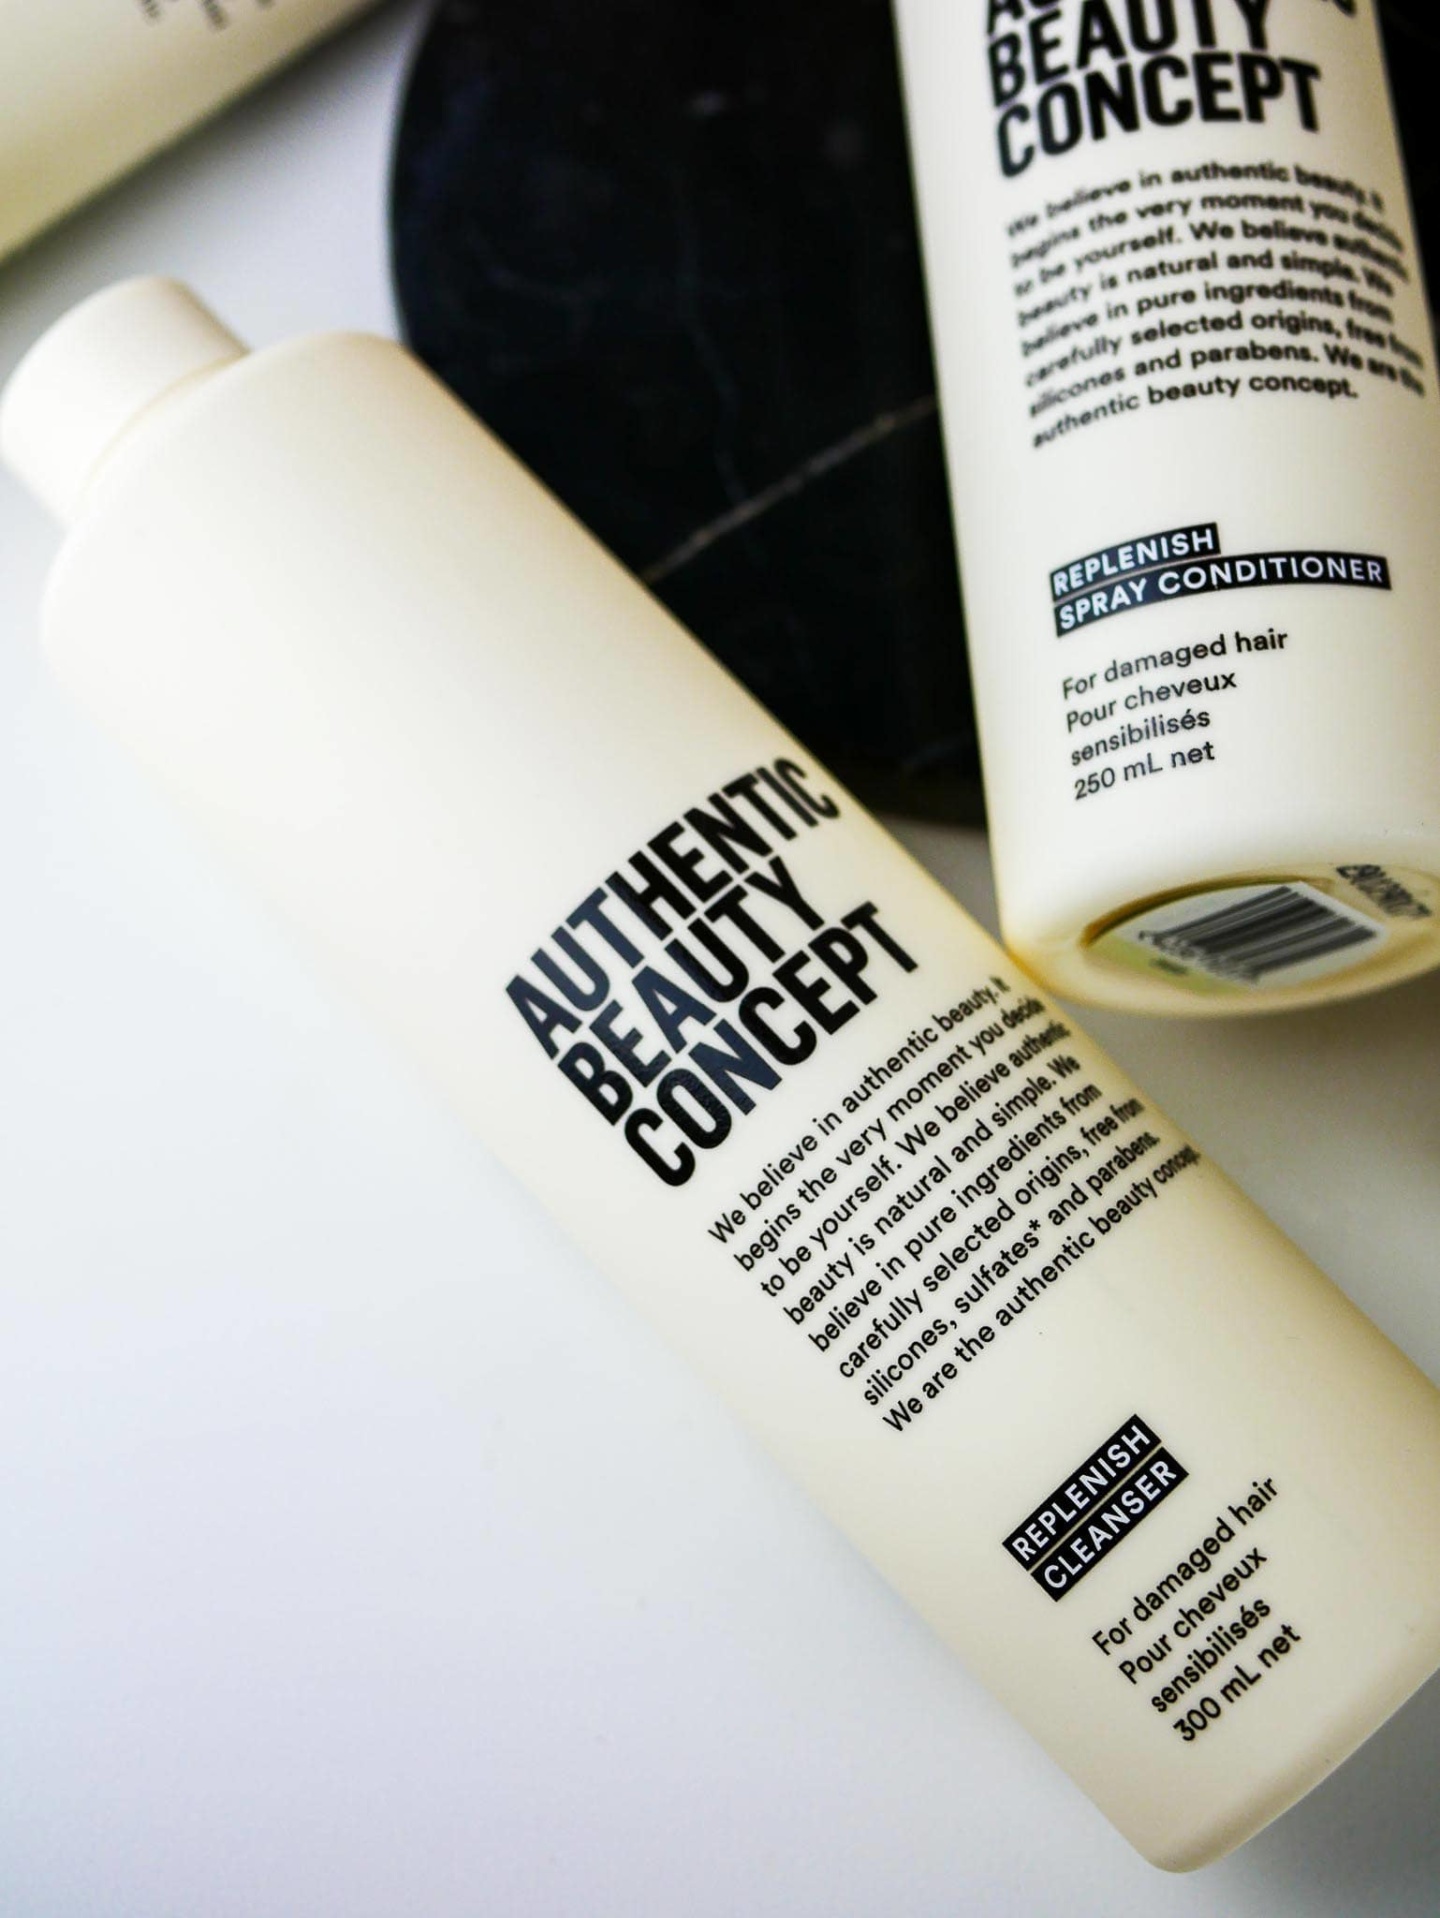 authentic beauty concept shampooing reparateur avis